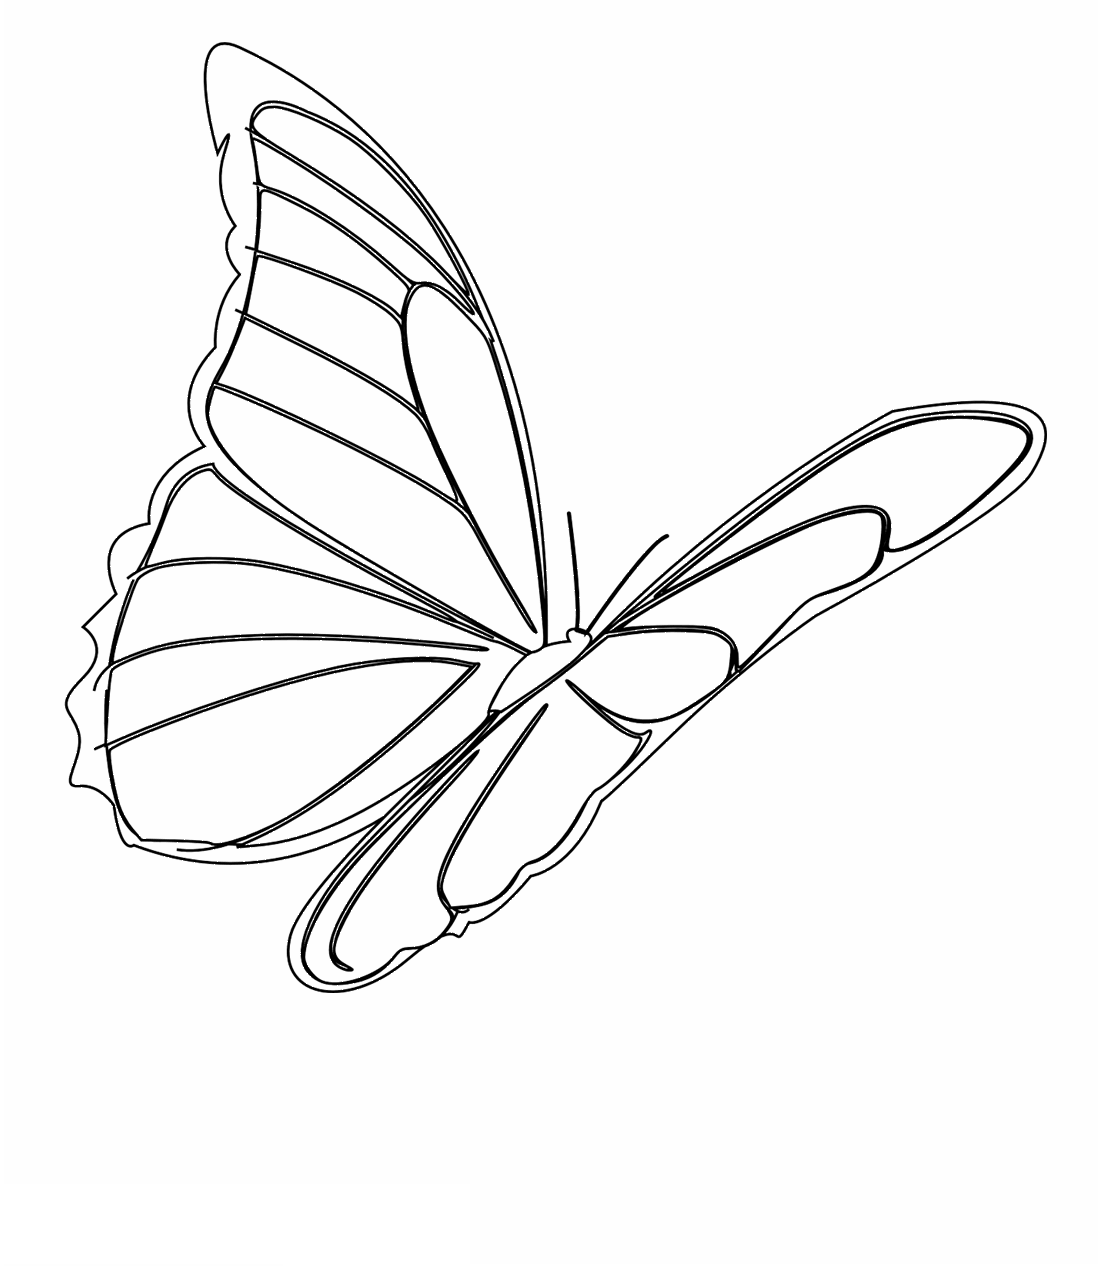 Tranh tô màu cánh bướm